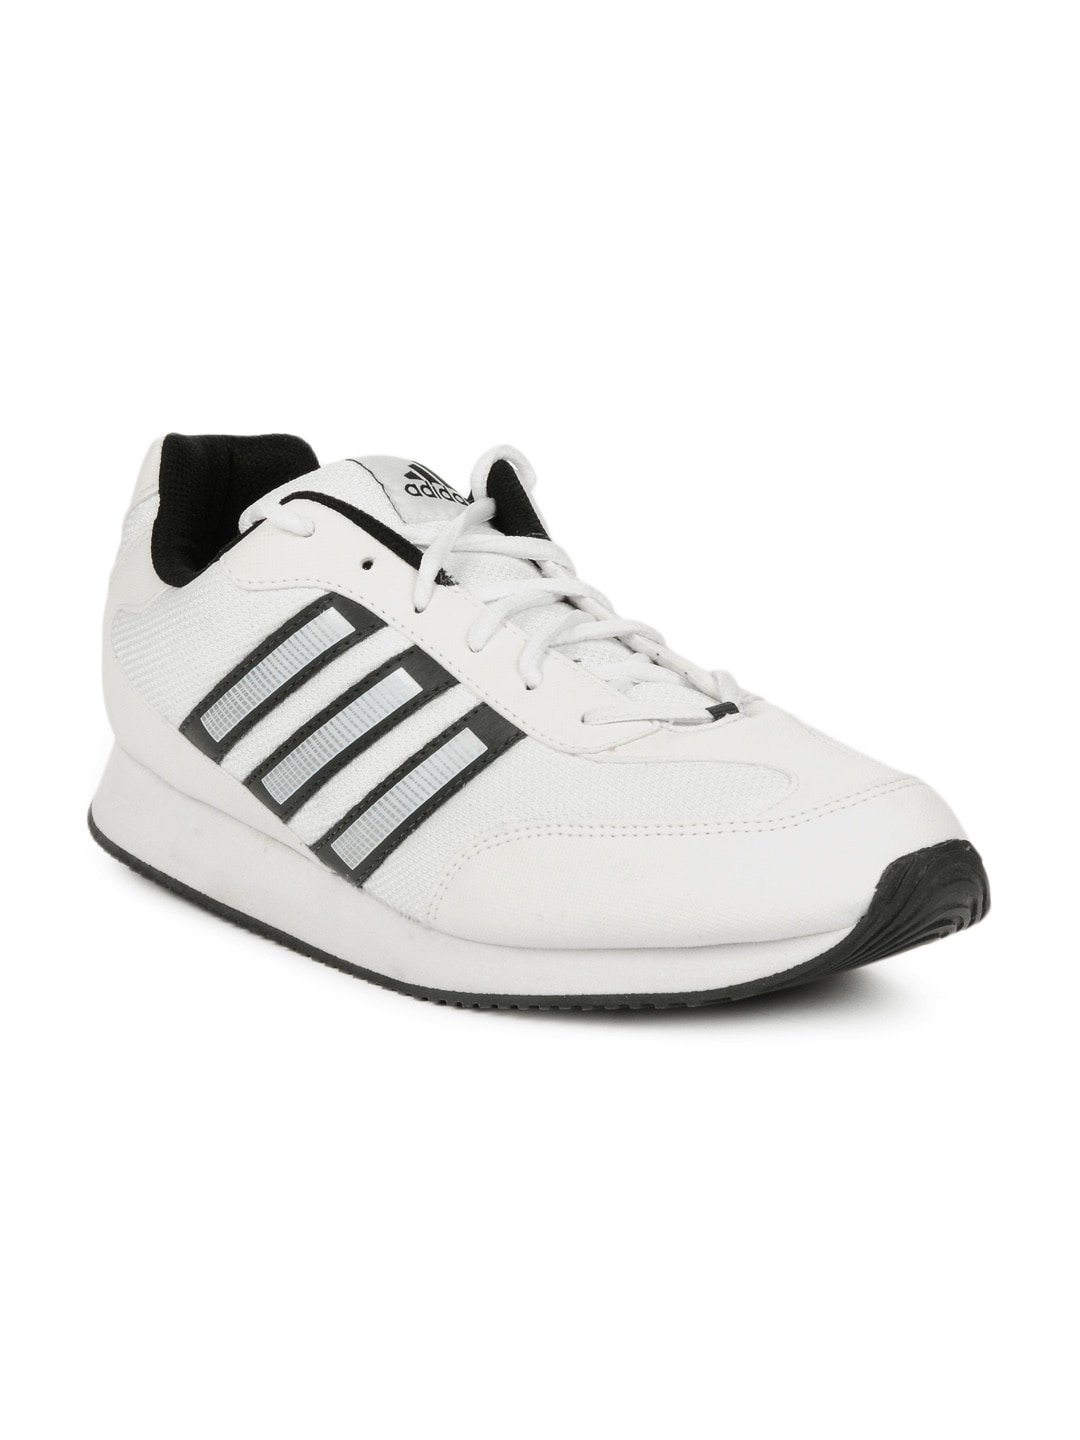 ADIDAS Men White Pluto Sports Shoes